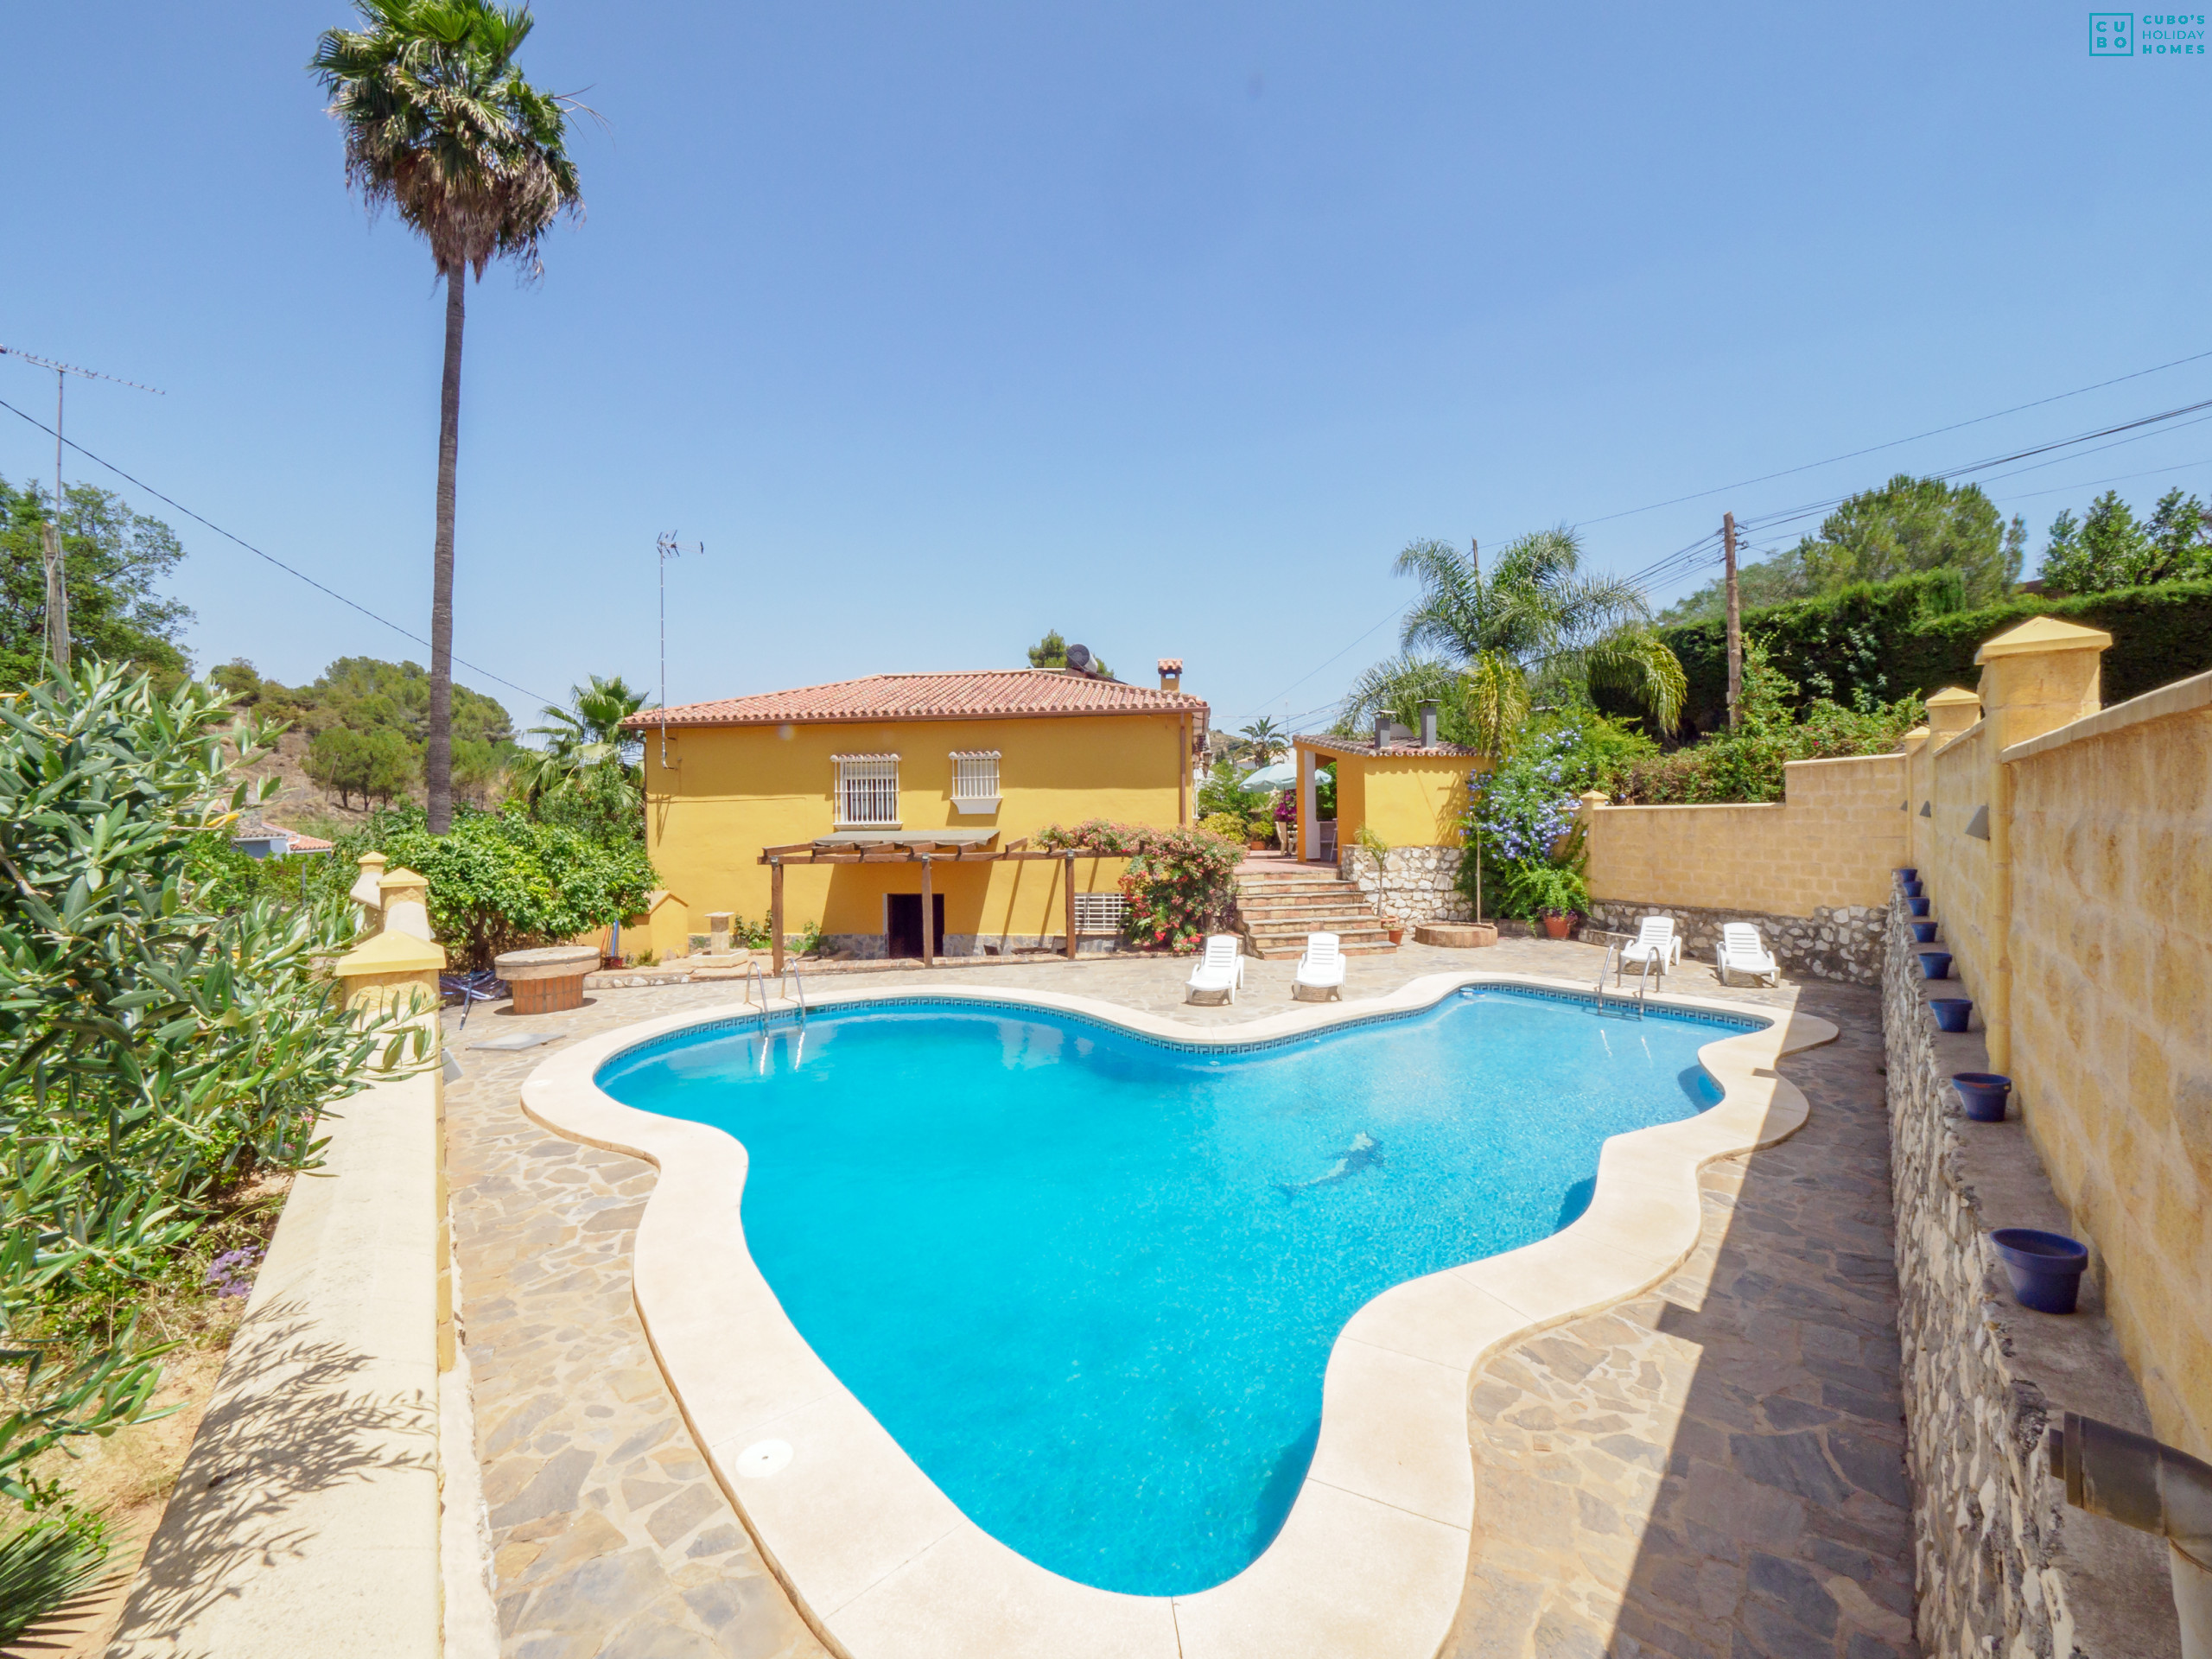 Cruz de Piedra rural house pool and outdoor areas